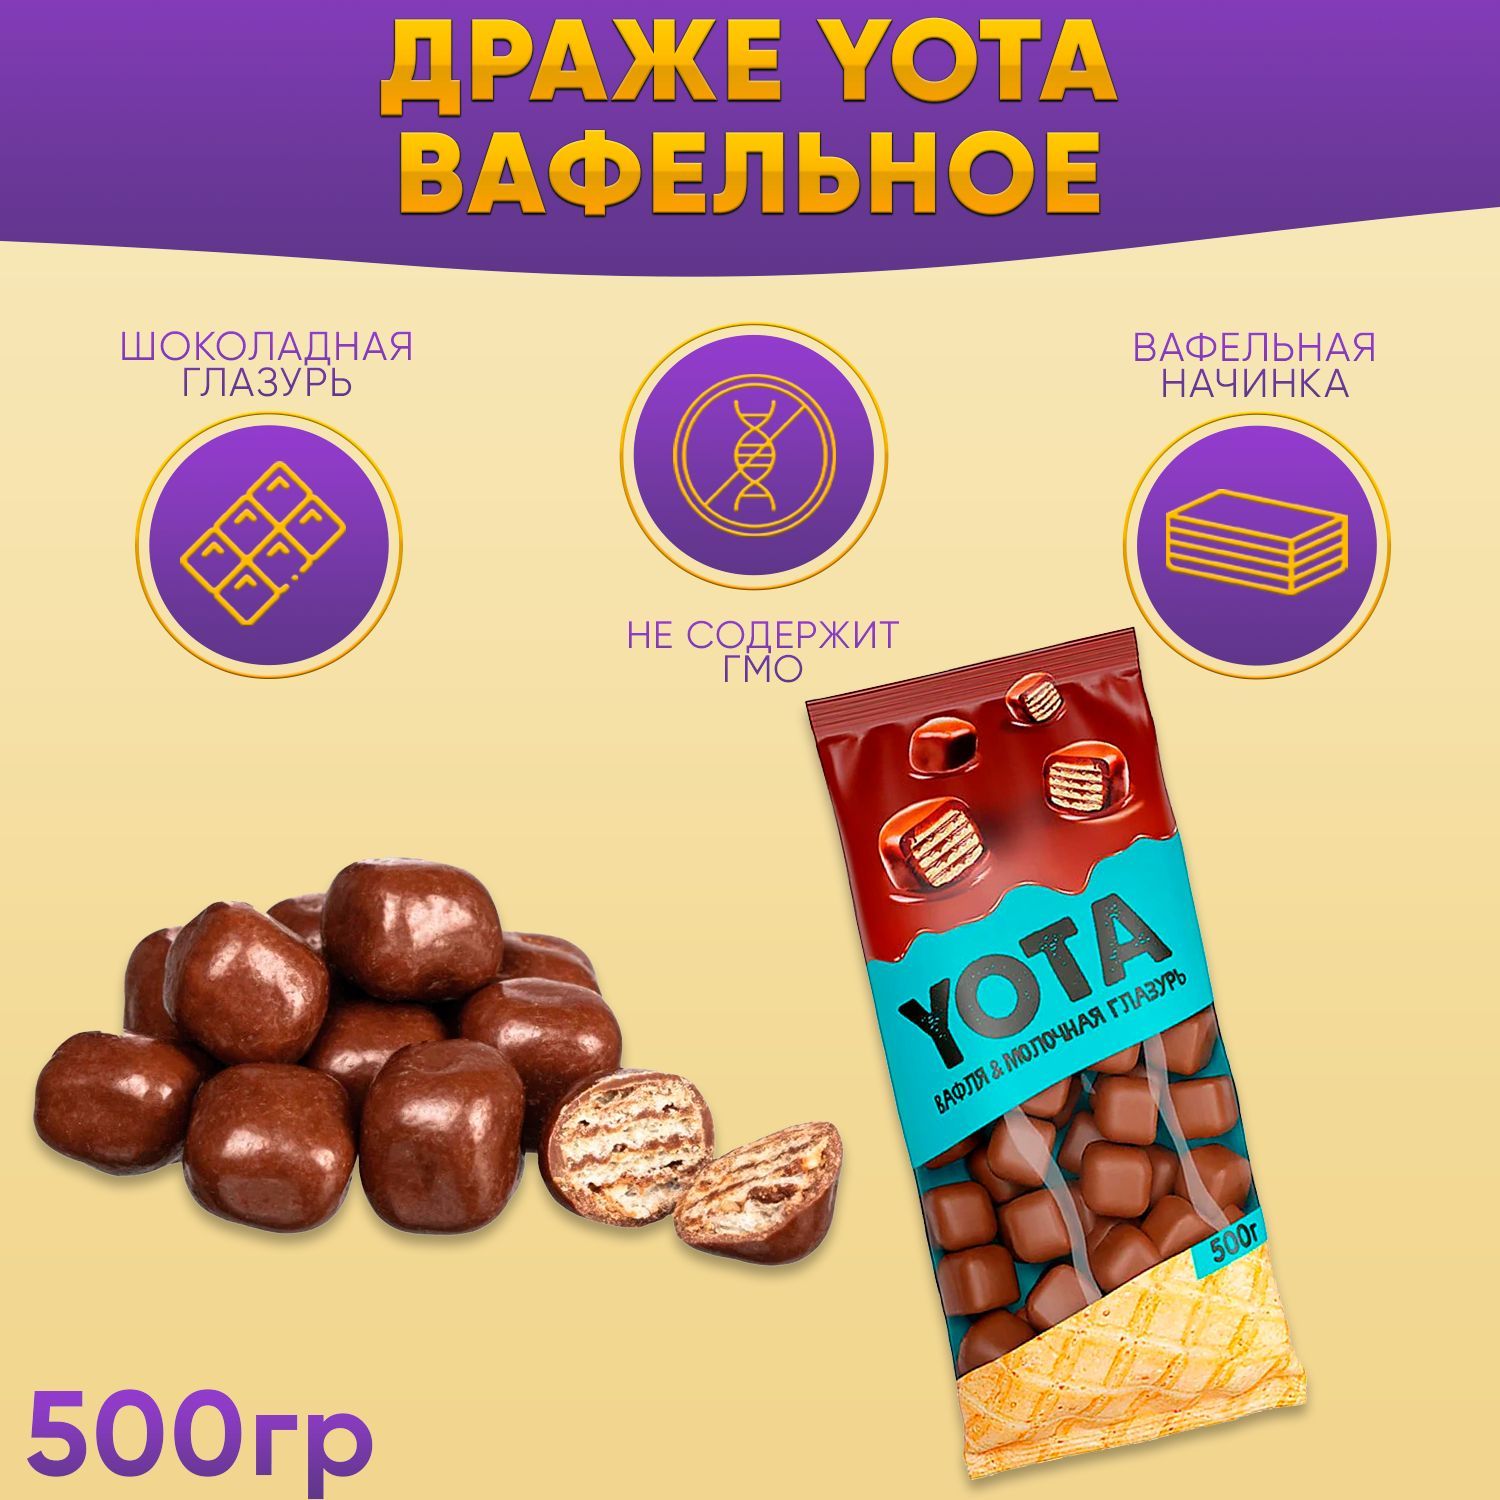 ДражеВафлявМолочно-ШоколаднойГлазури